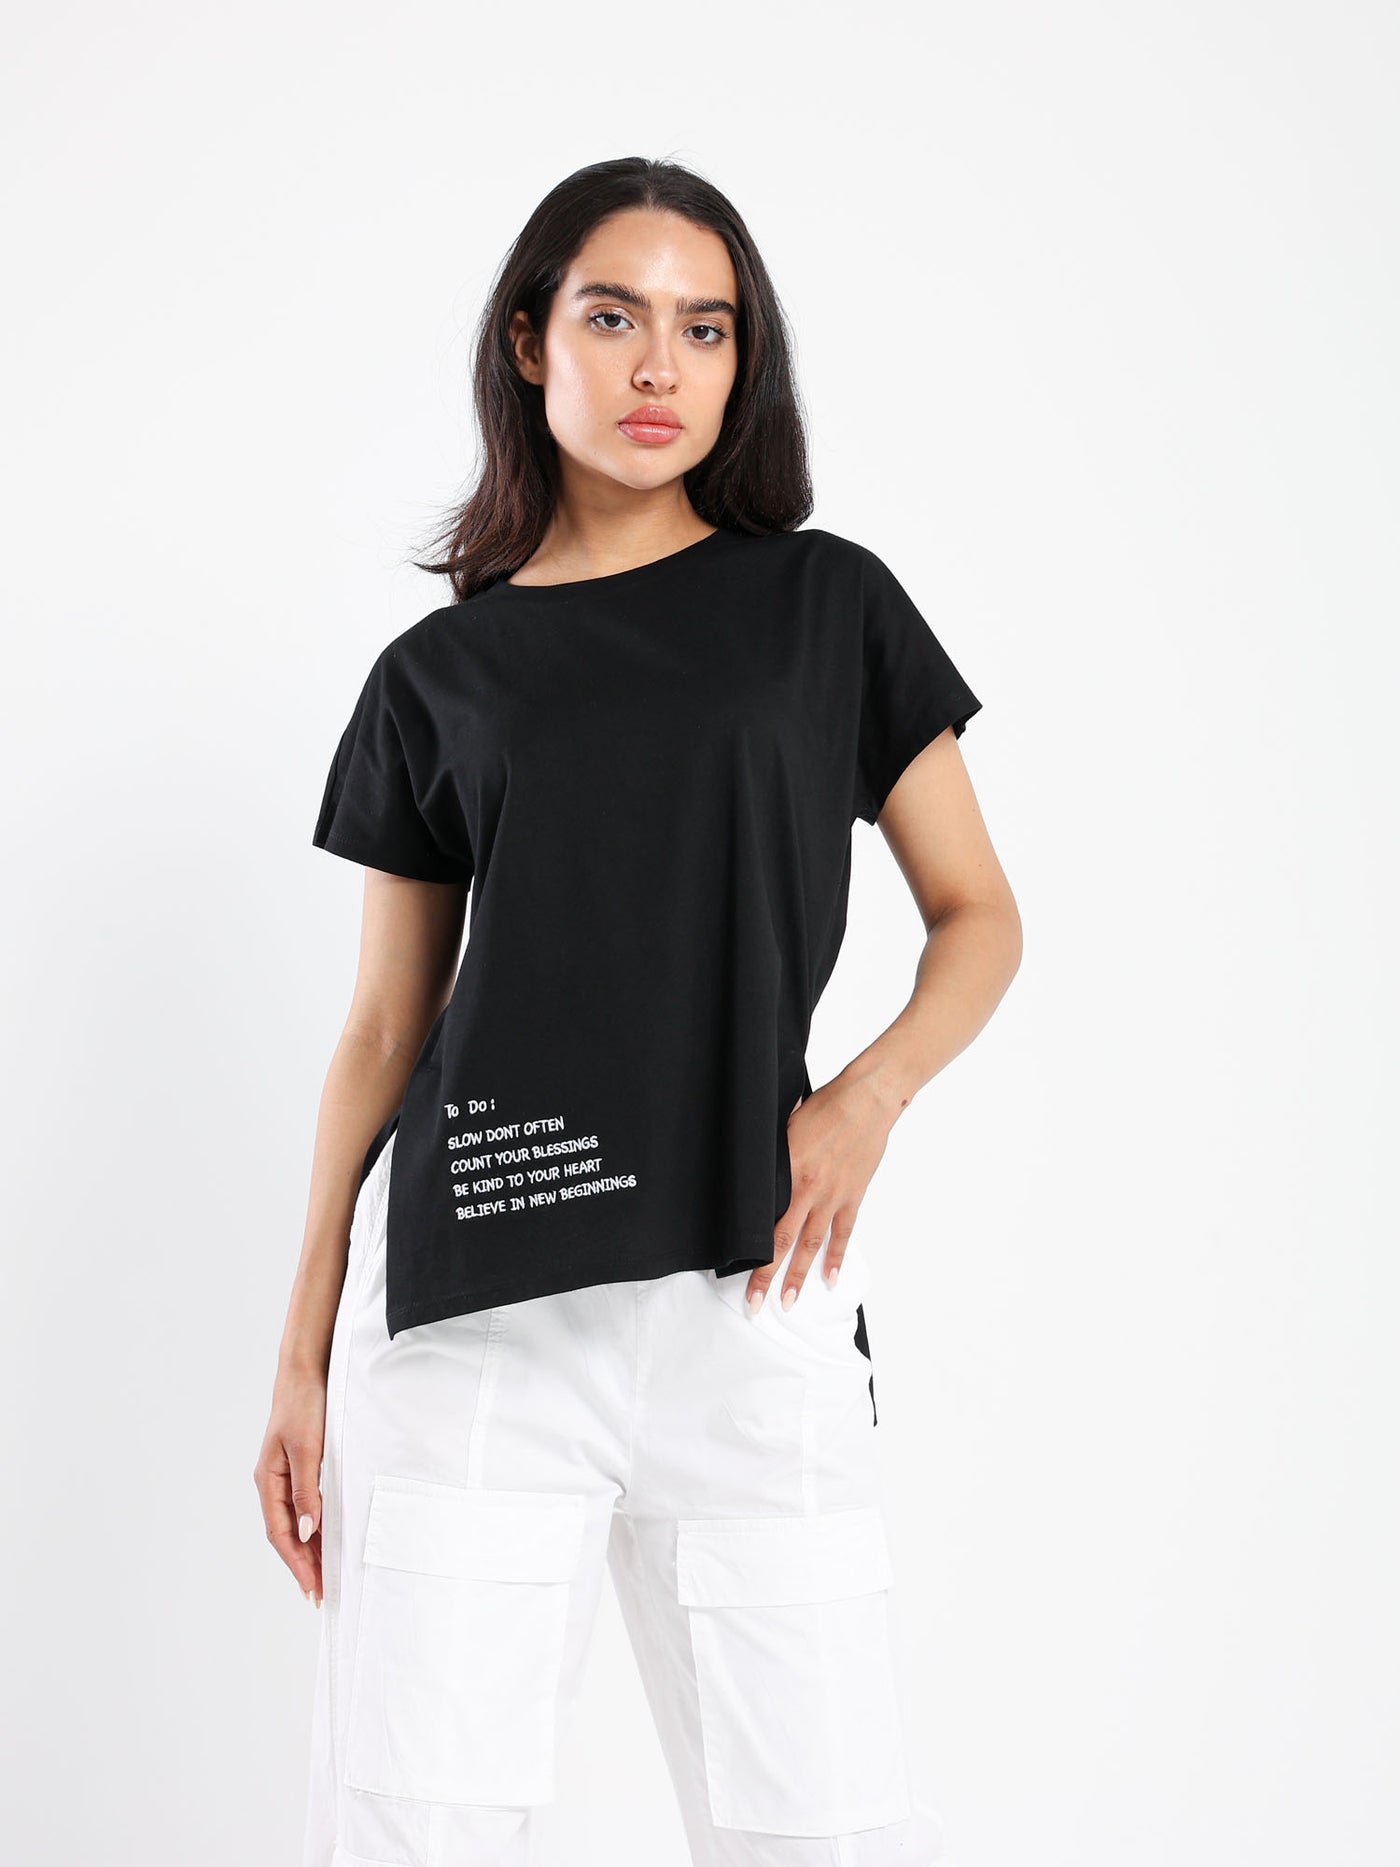 T-Shirt - "Cereal Embo" Print - Slit Sides